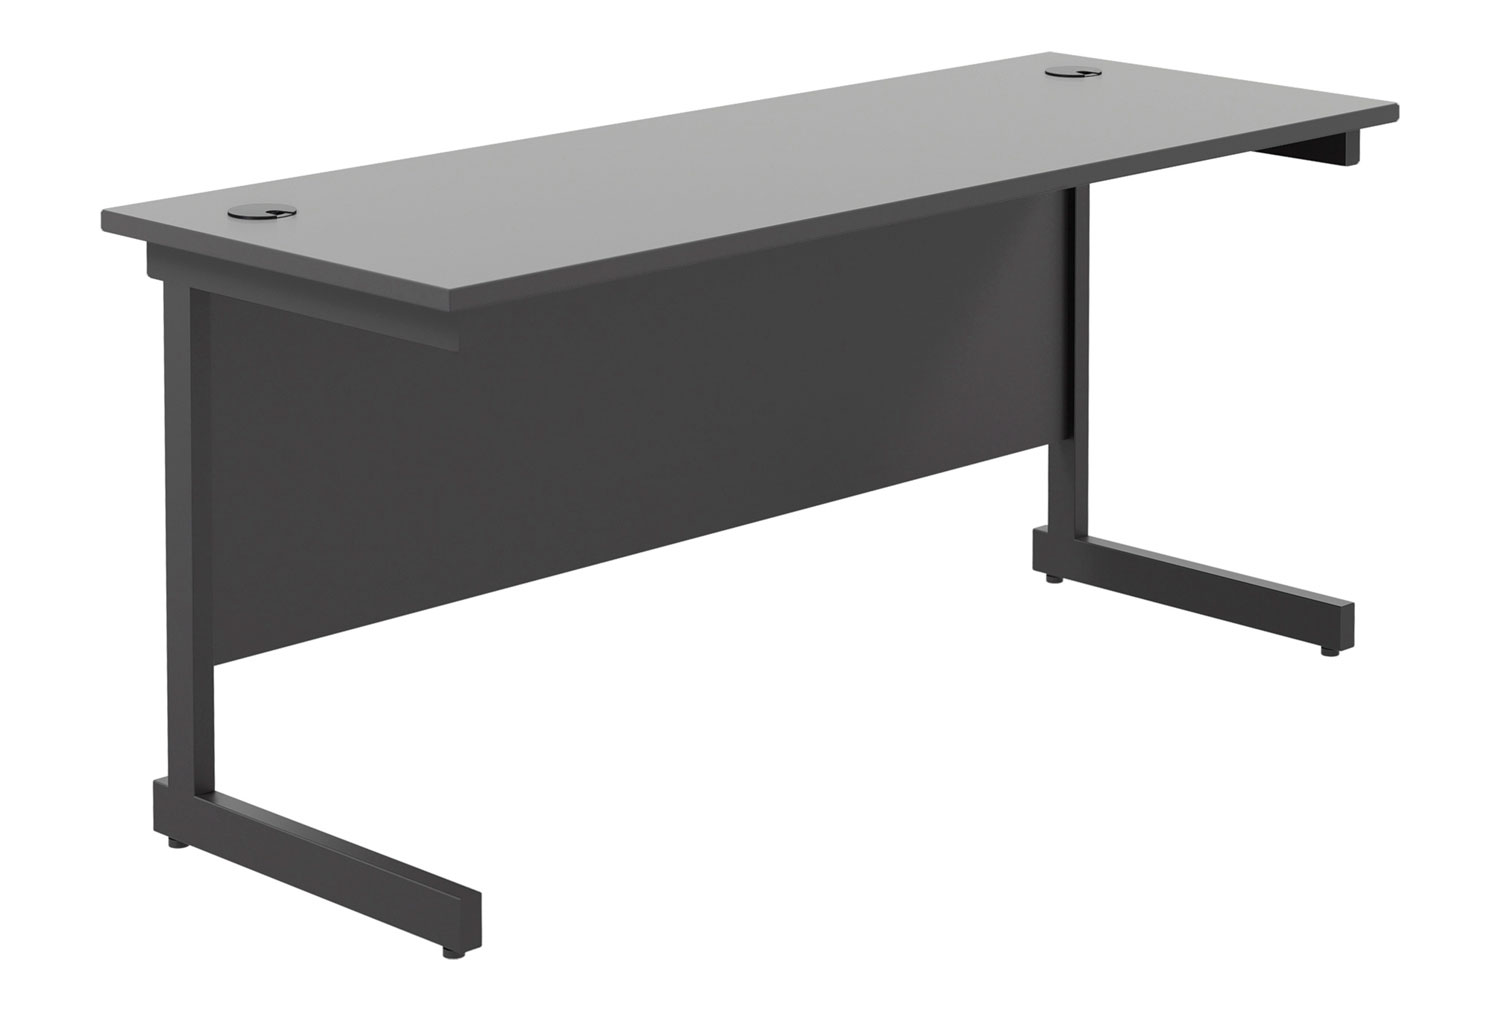 All Black C-Leg Narrow Rectangular Office Desk, 160w60dx73h (cm)